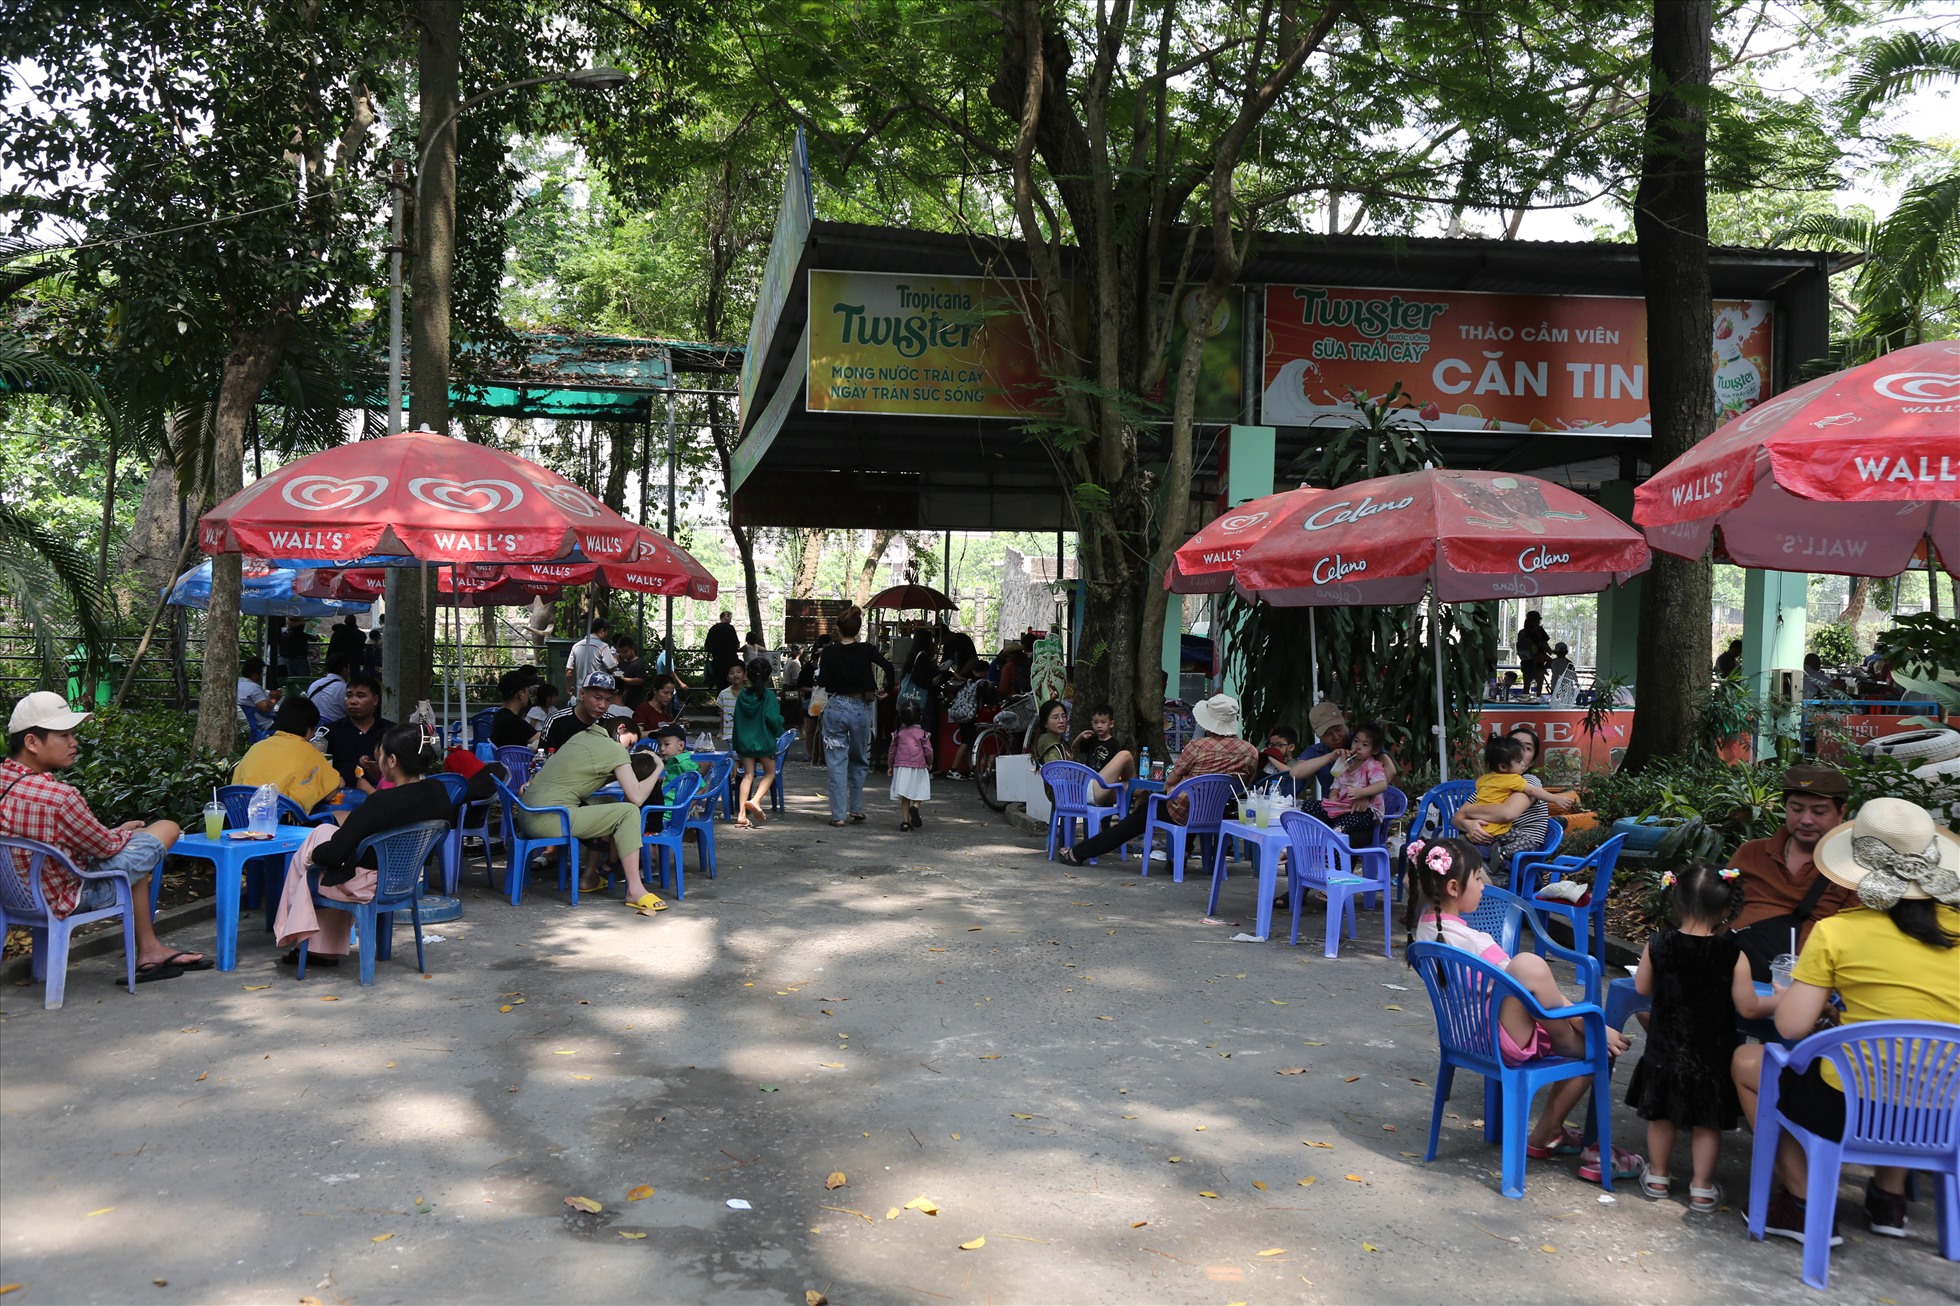 Khu vực quán xá phía bên trong Thảo Cầm Viên chật kín người ngồi nghỉ ngơi.